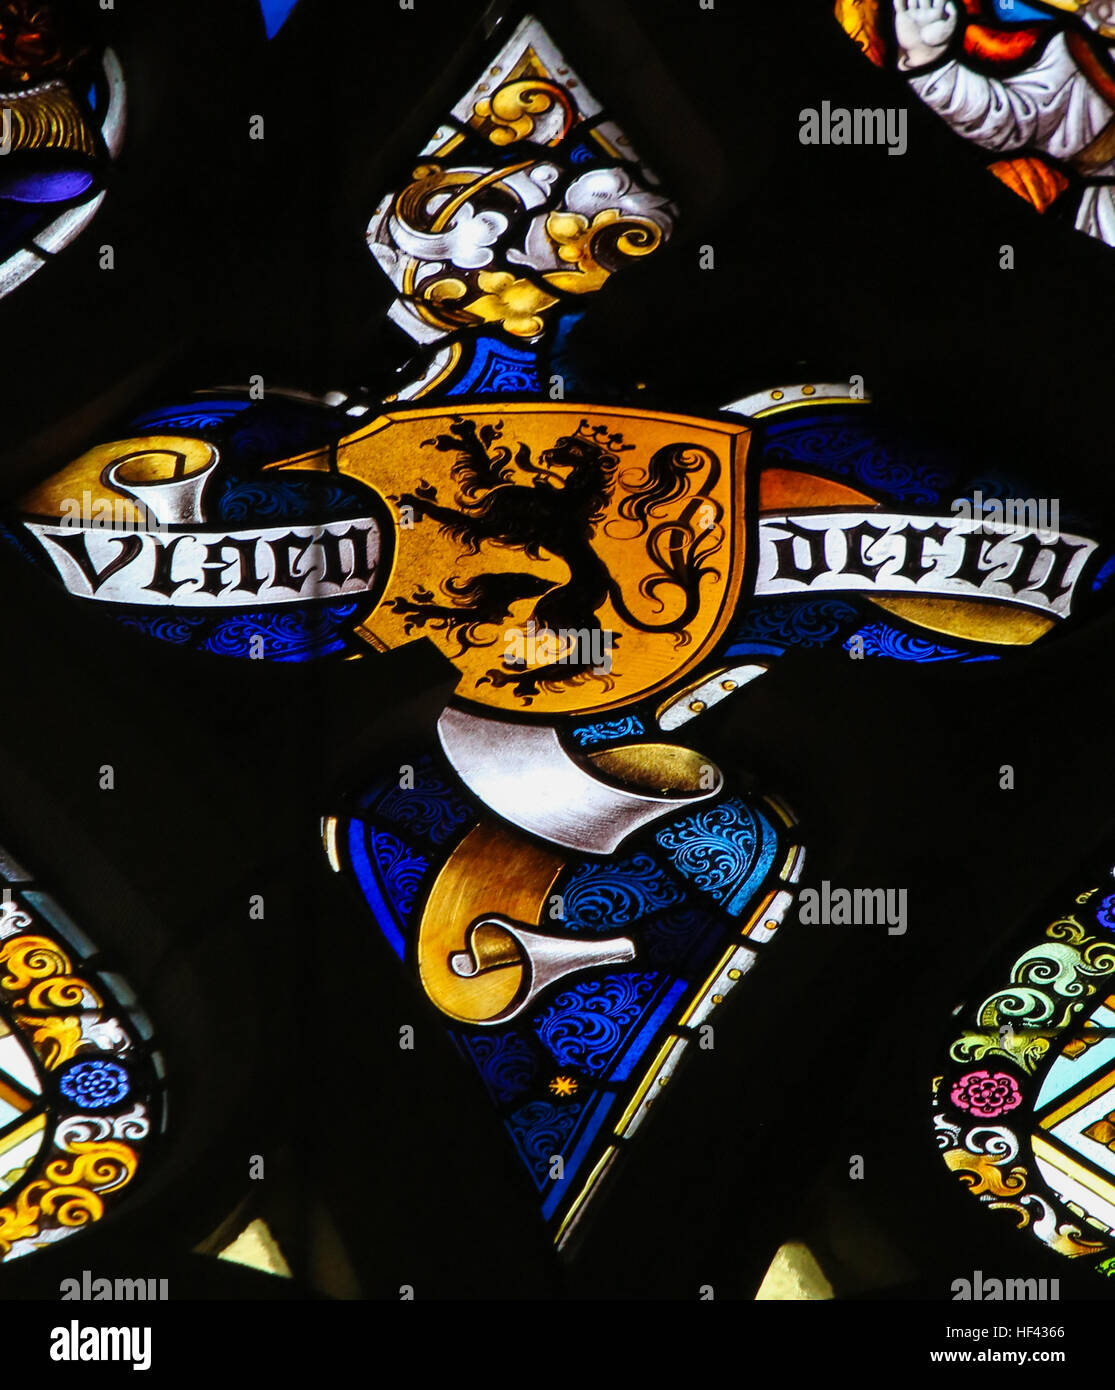 Vitrail représentant le Lion Flamand et le texte Vlaanderen (Flandre) dans la Cathédrale de Saint-bavon à Gand, Flandre orientale, Belgique. Banque D'Images